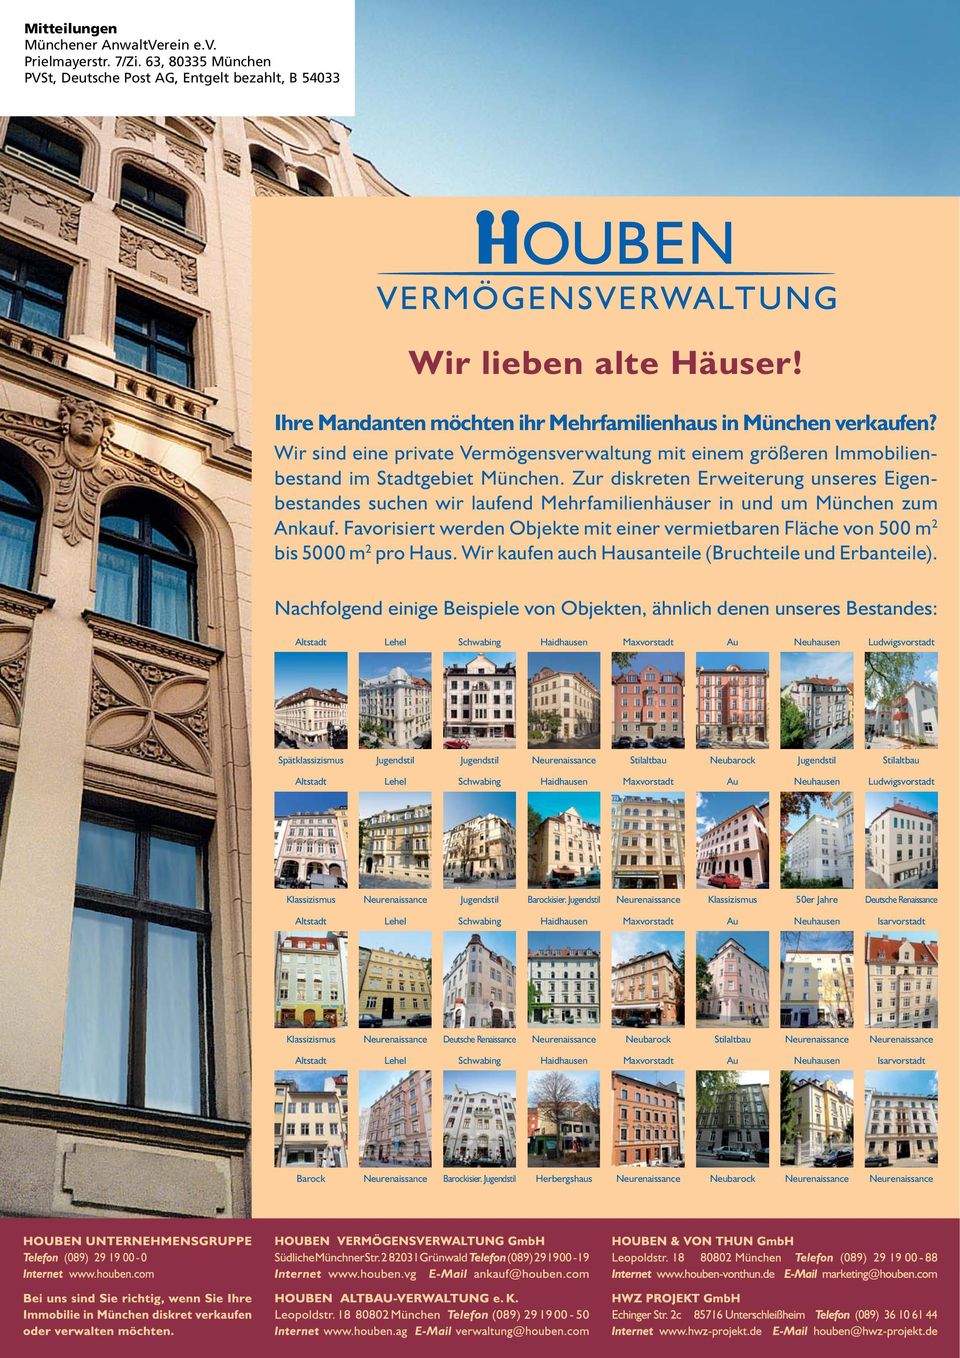 Zur diskreten Erweiterung unseres Eigenbestandes suchen wir laufend Mehrfamilienhäuser in und um München zum Ankauf.